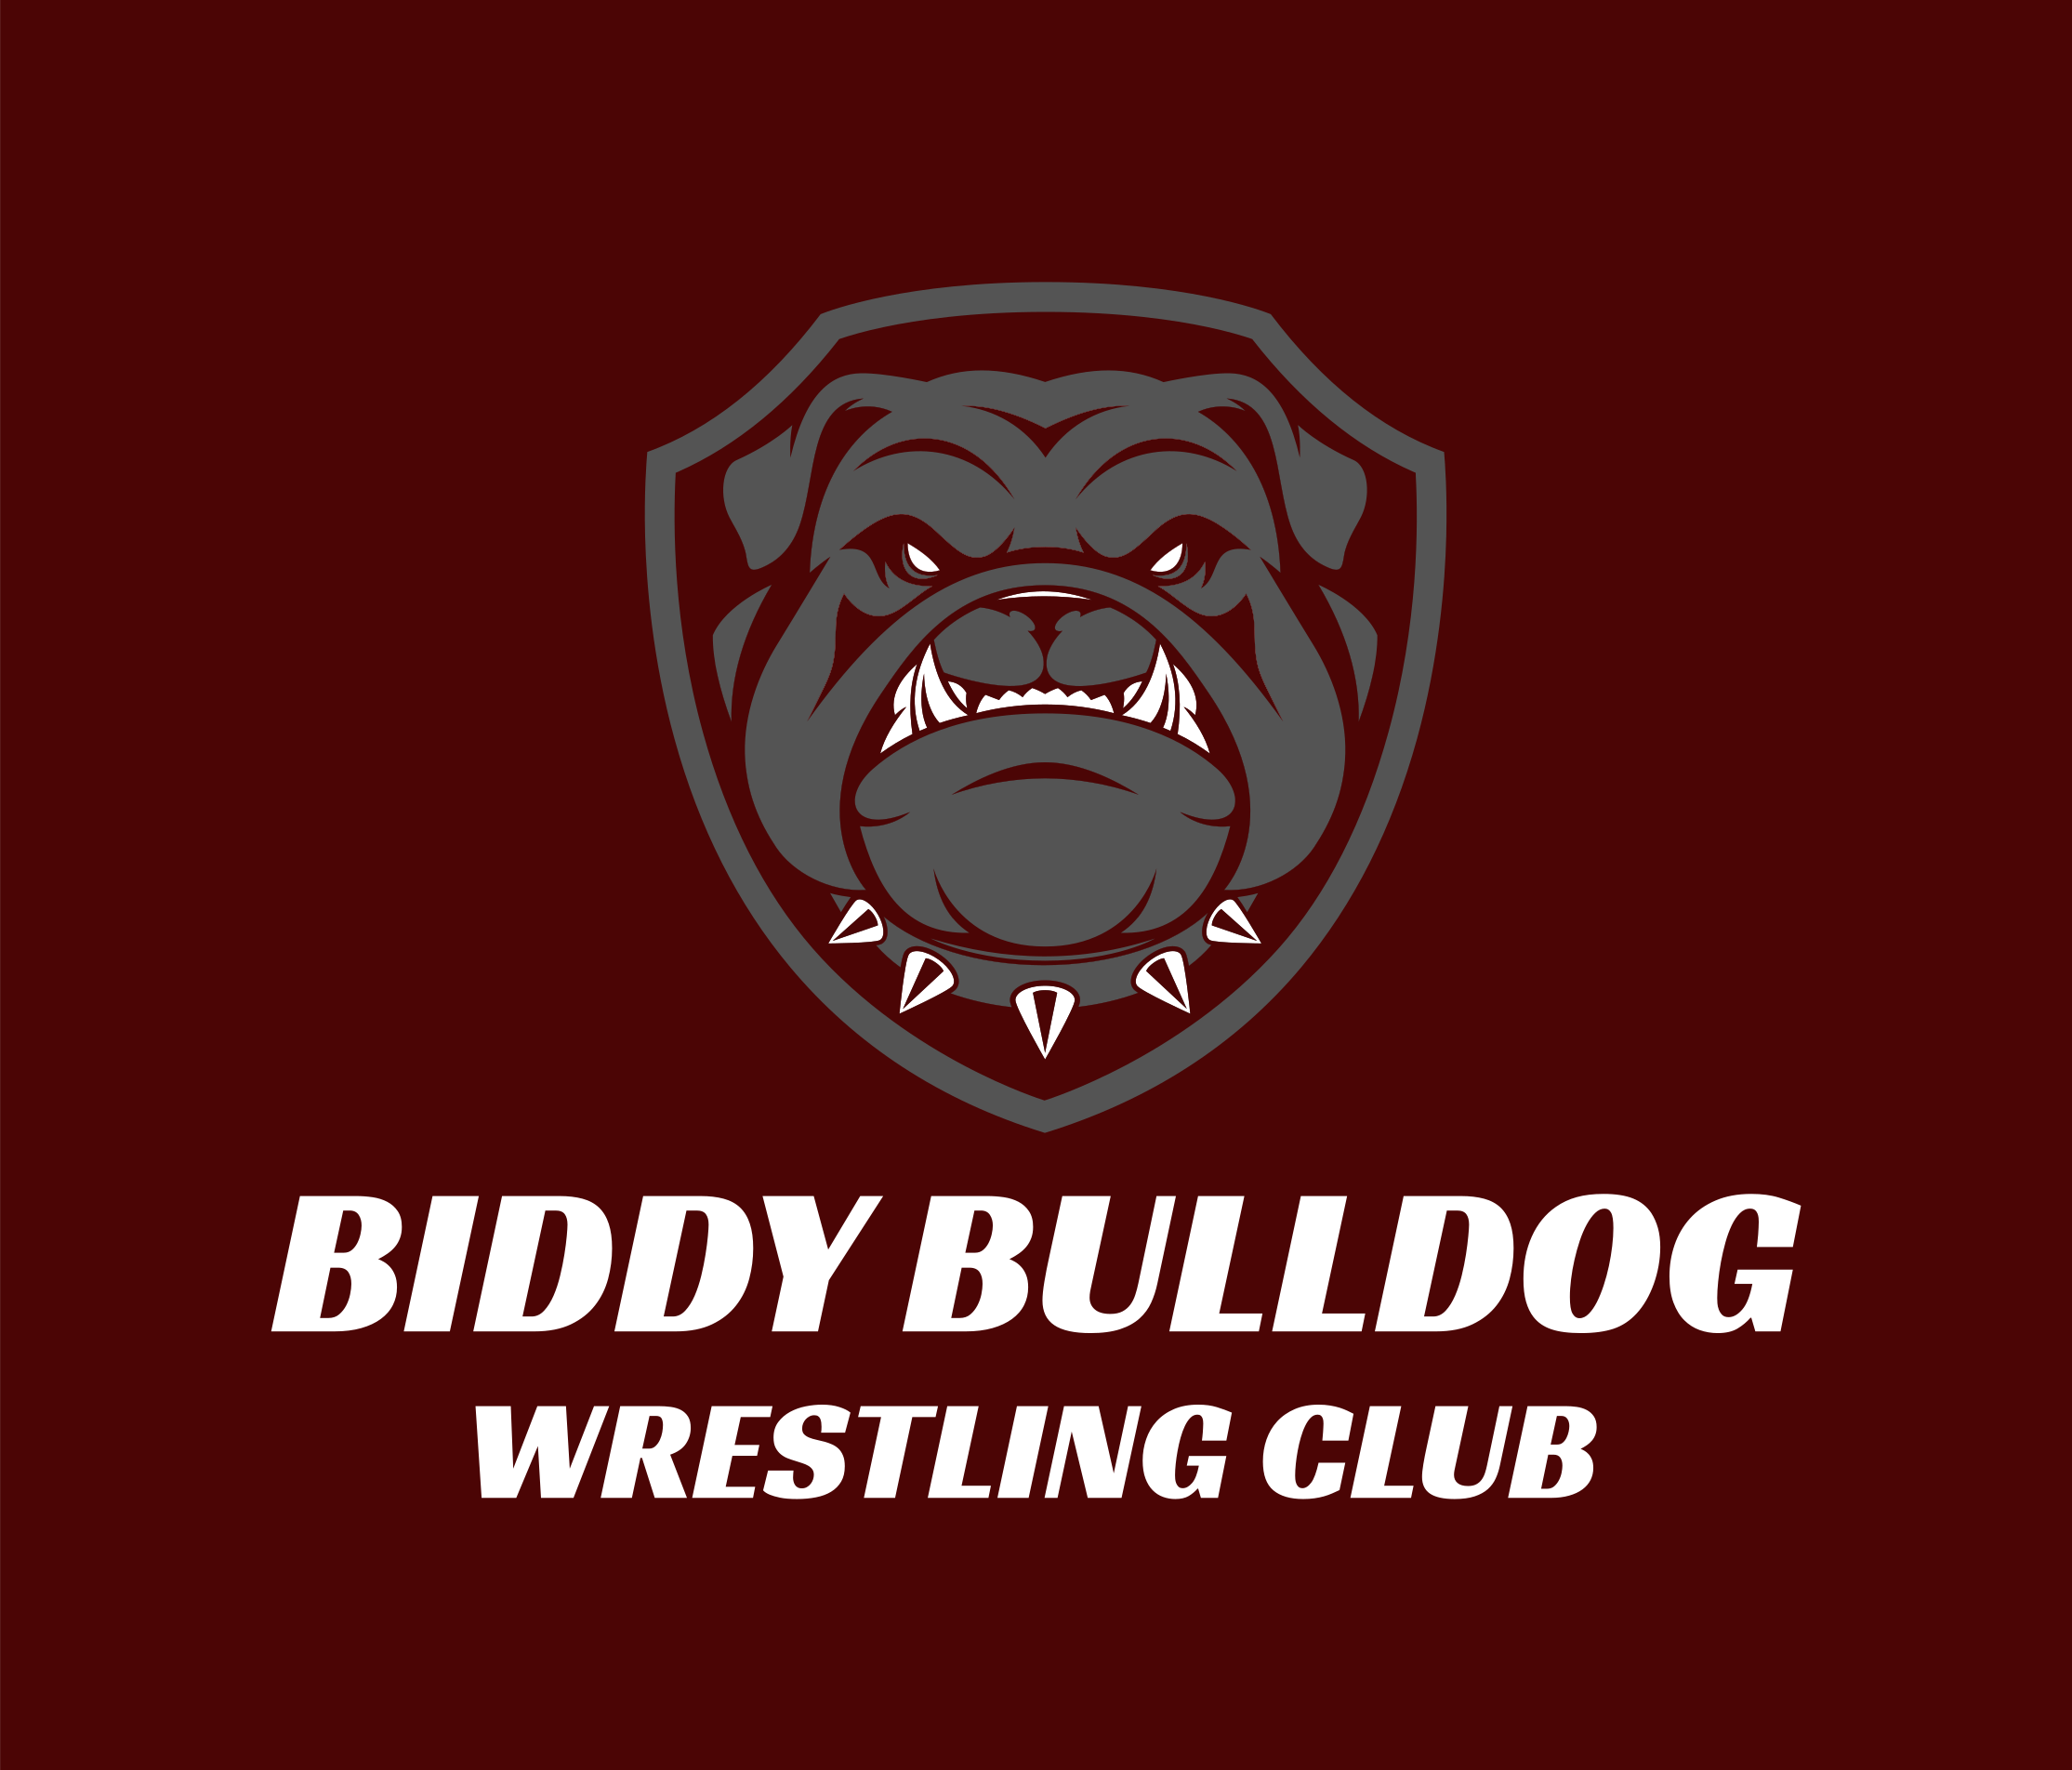 Rossford Biddy Bulldog Wrestling Club